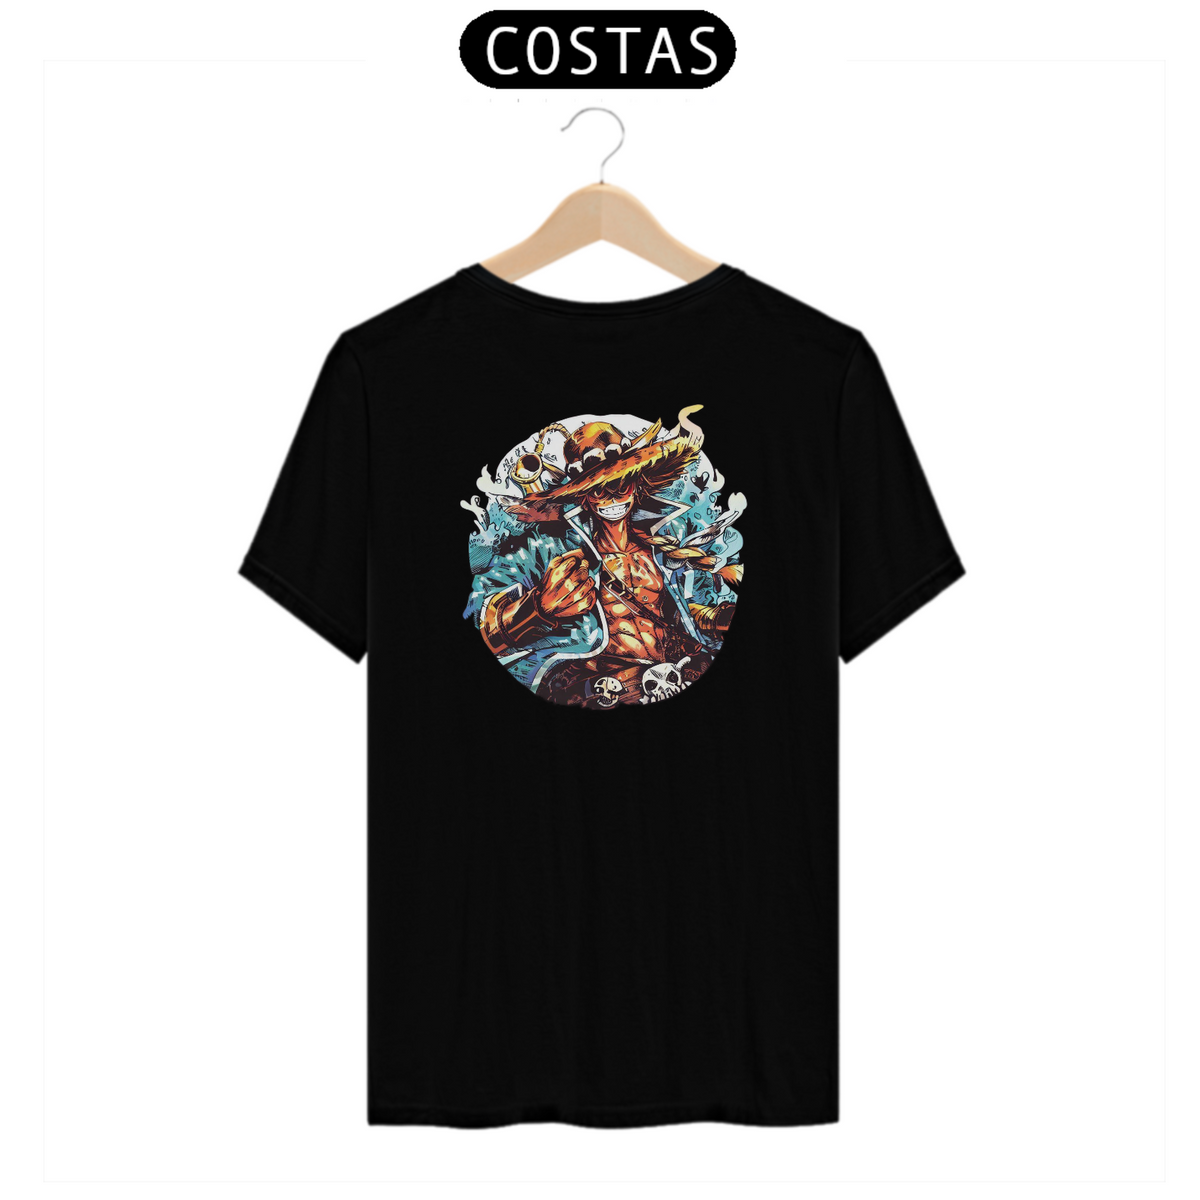 Nome do produto: Camiseta One Piece (Costas)